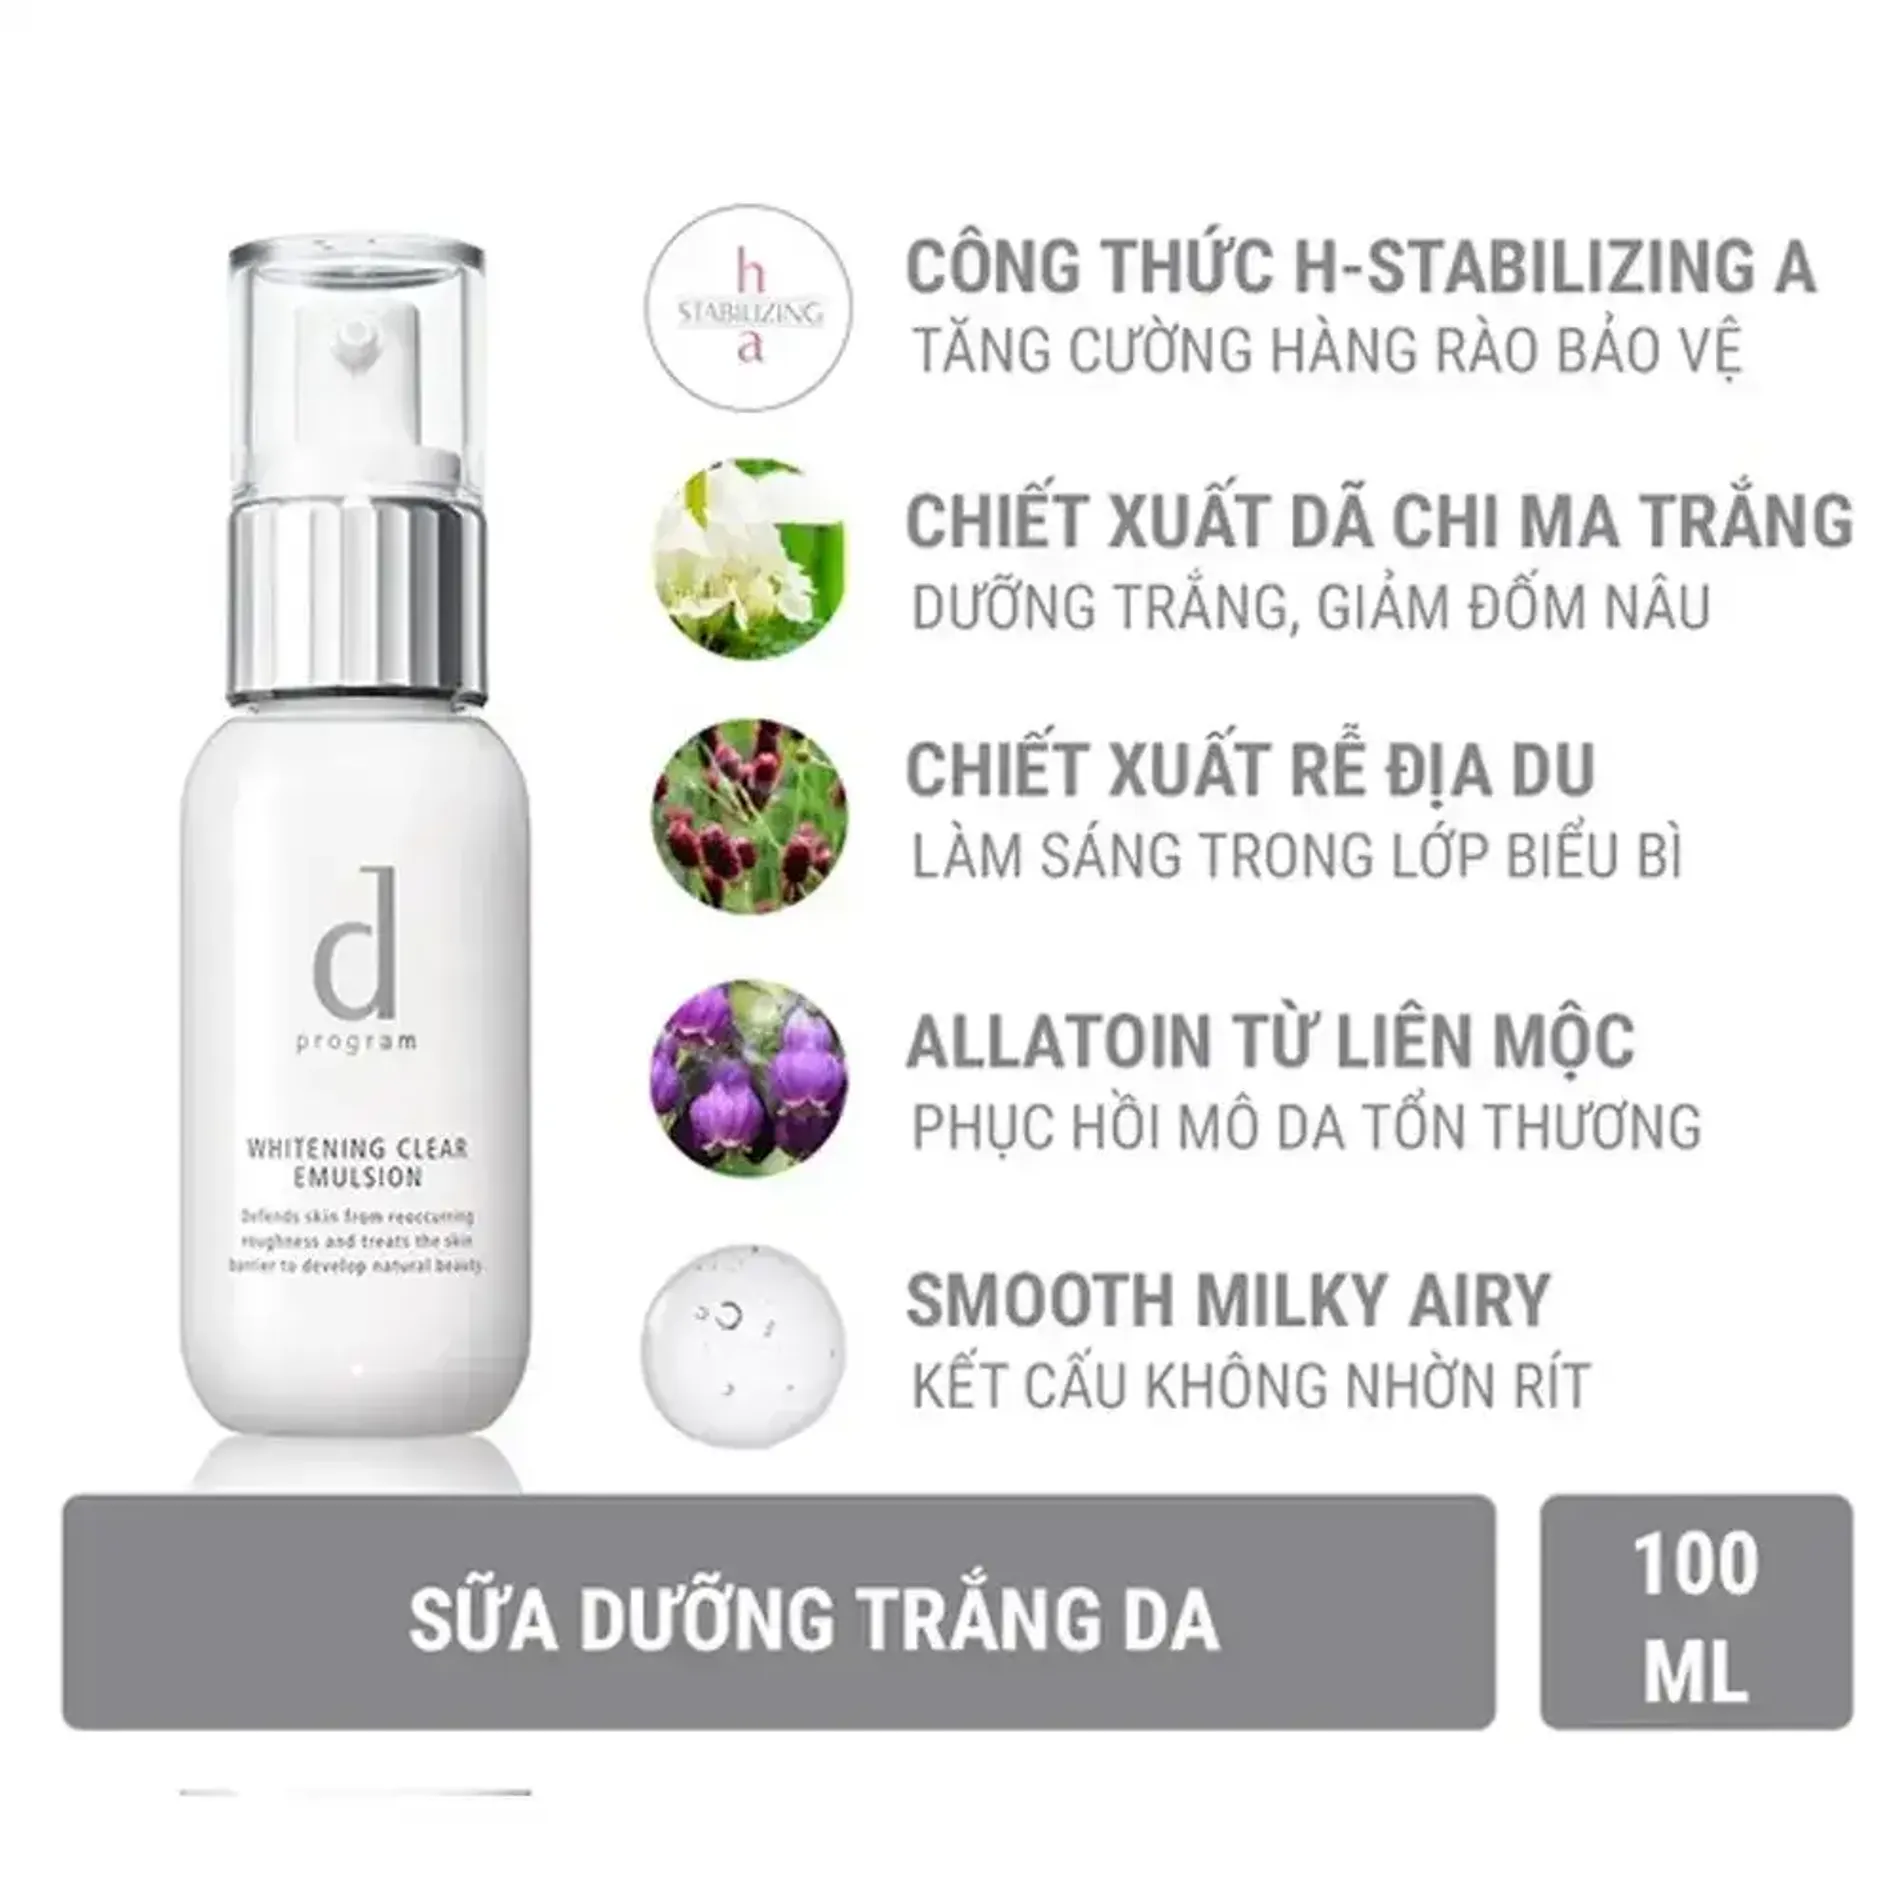 sua-duong-lam-trang-da-dprogram-whitening-clear-emulsion-2